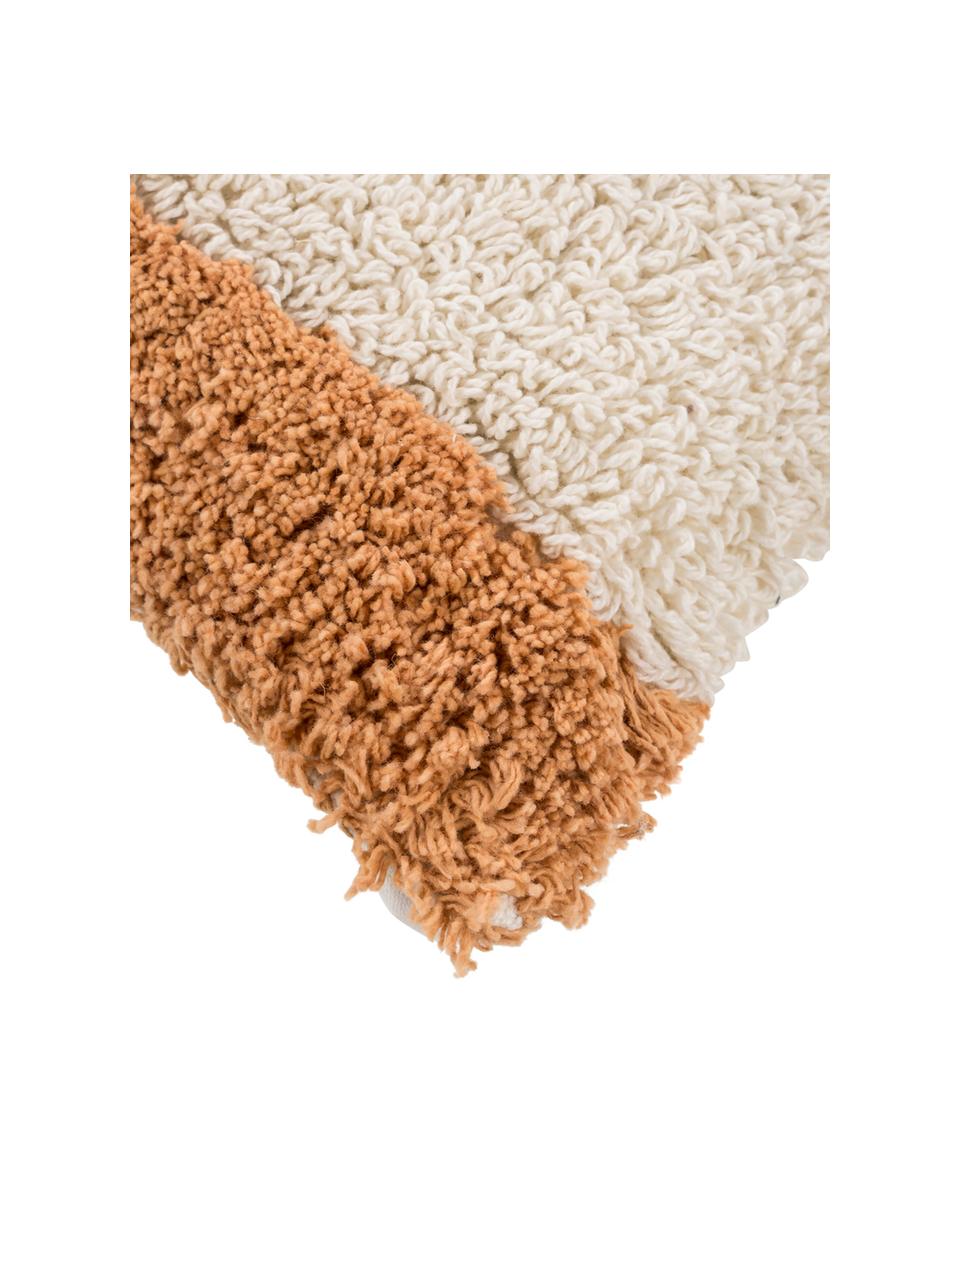 Flauschige Kissenhülle Power mit getufteter Oberfläche, 100% Baumwolle, Orange, gebrochenes Weiß, 30 x 50 cm